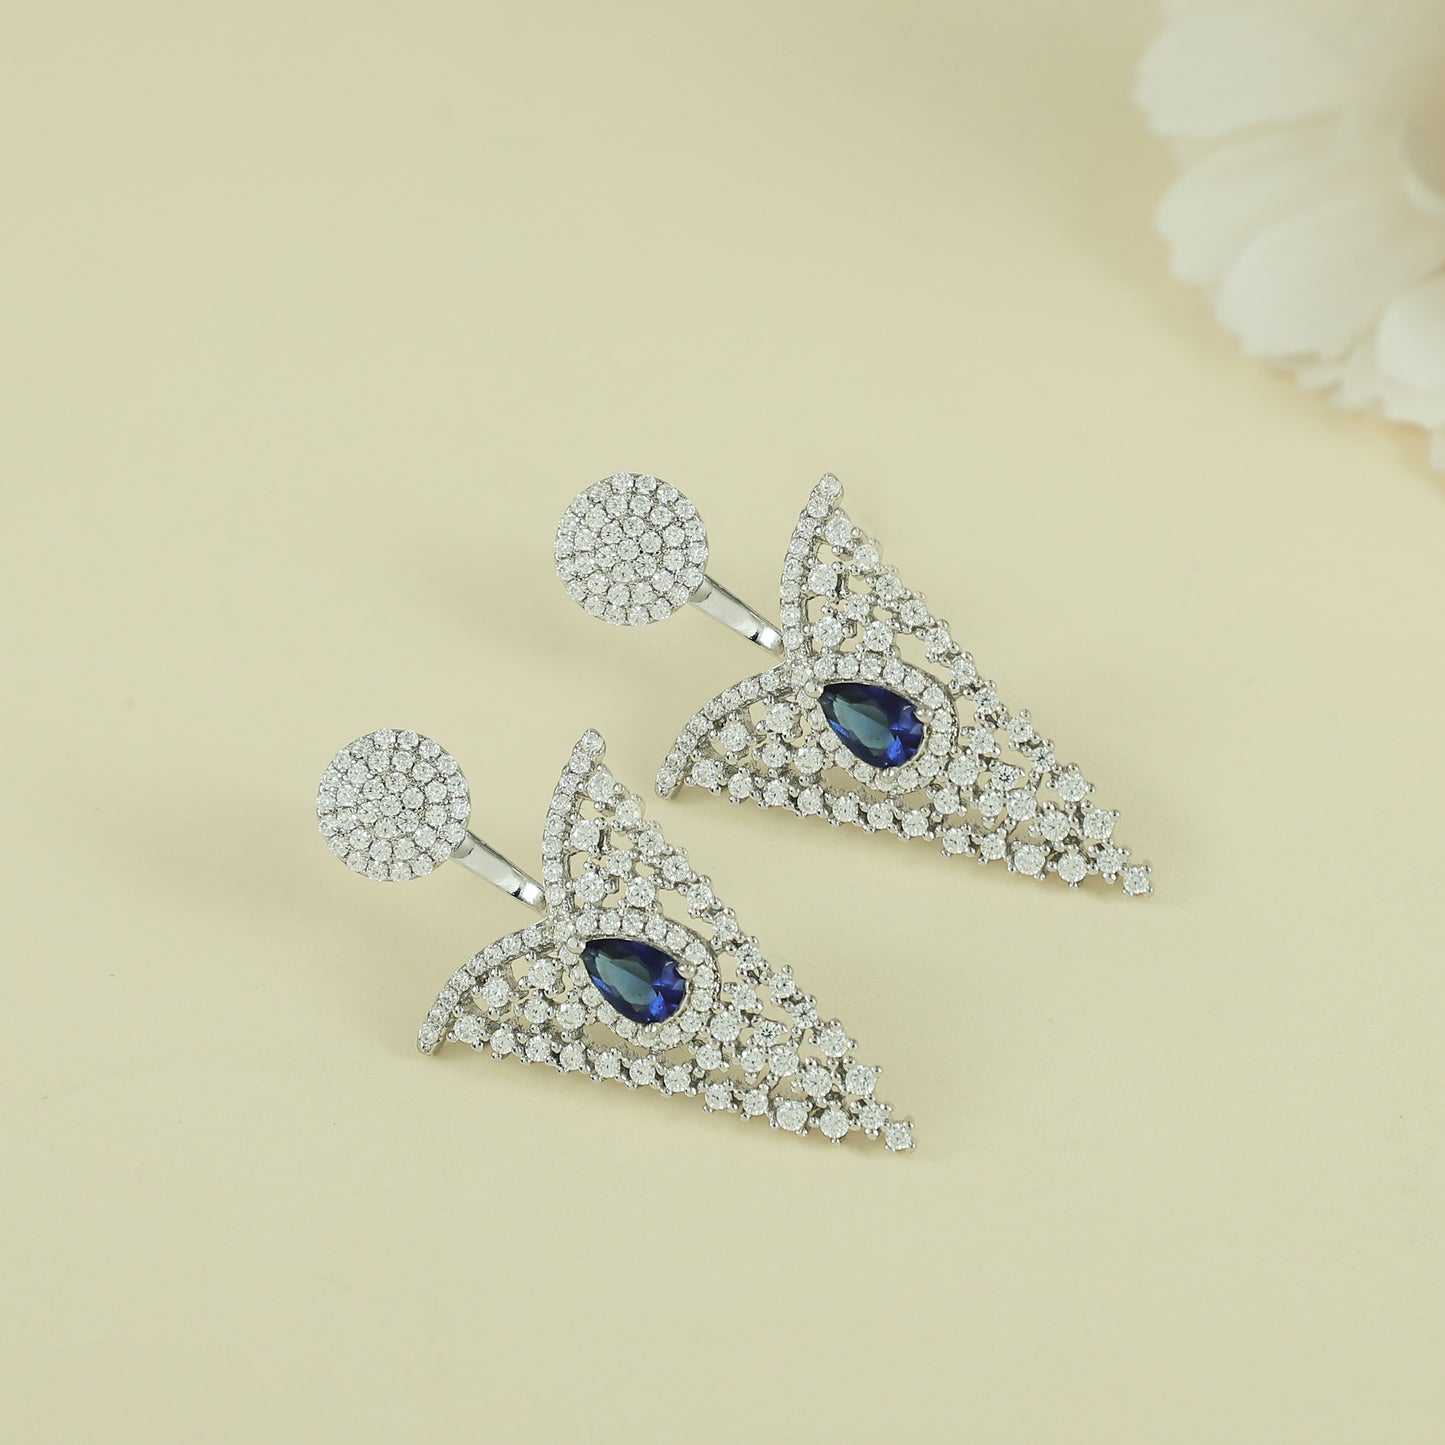 Riyana Delicate Silver Earrings